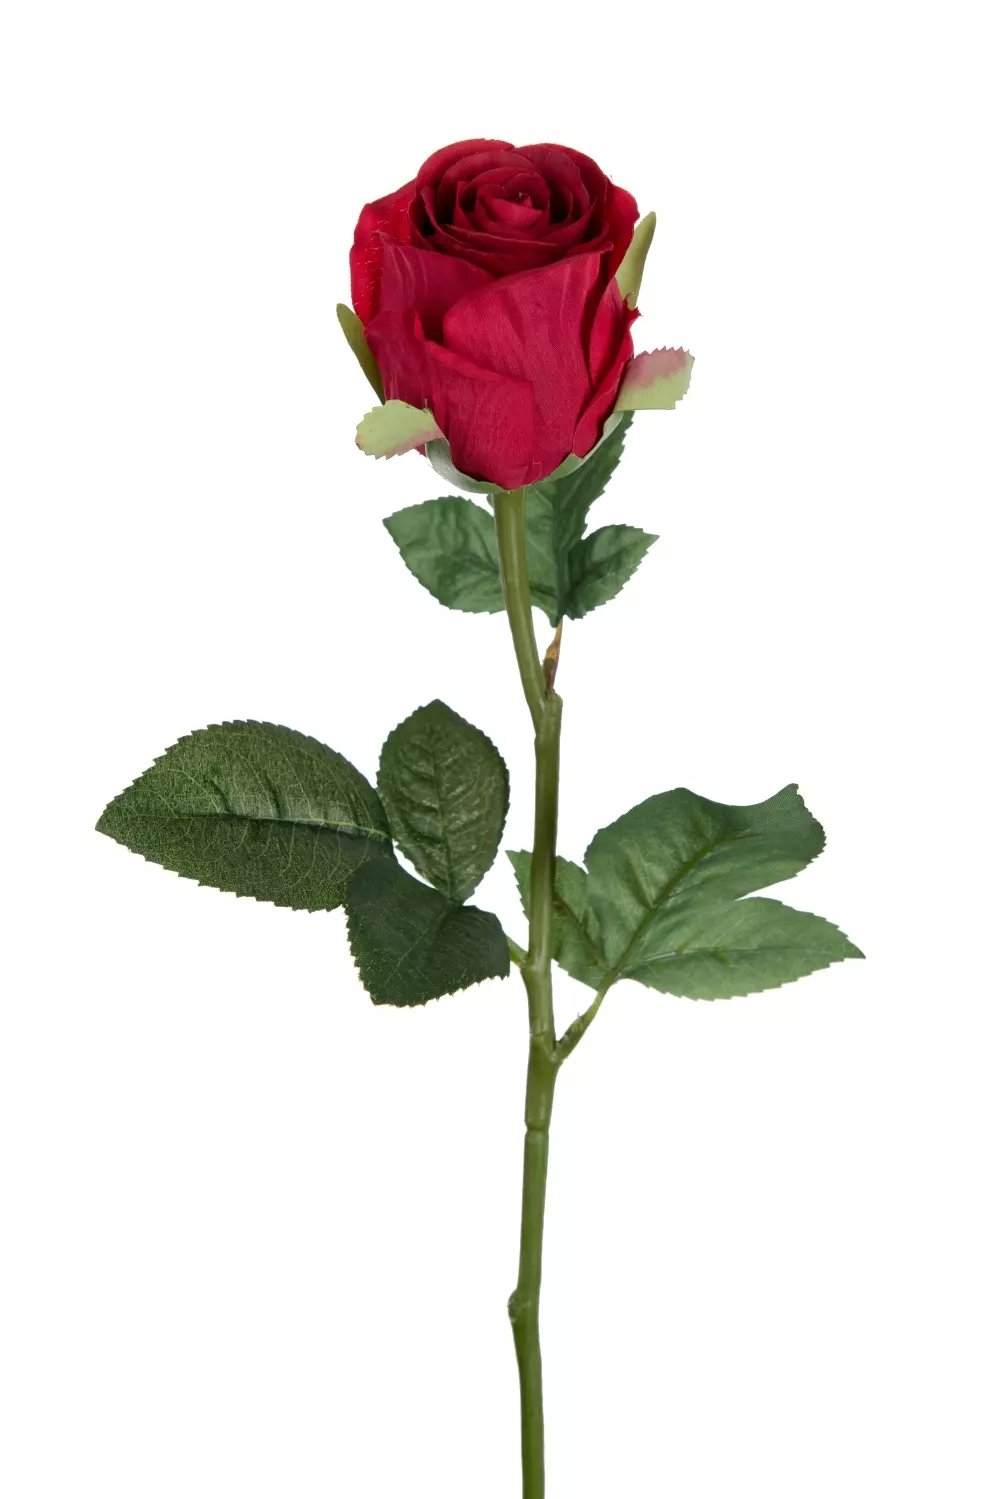 Rose Rød H50 9603-80 7330026159646 Interiør Blomster og Planter Mr Plant